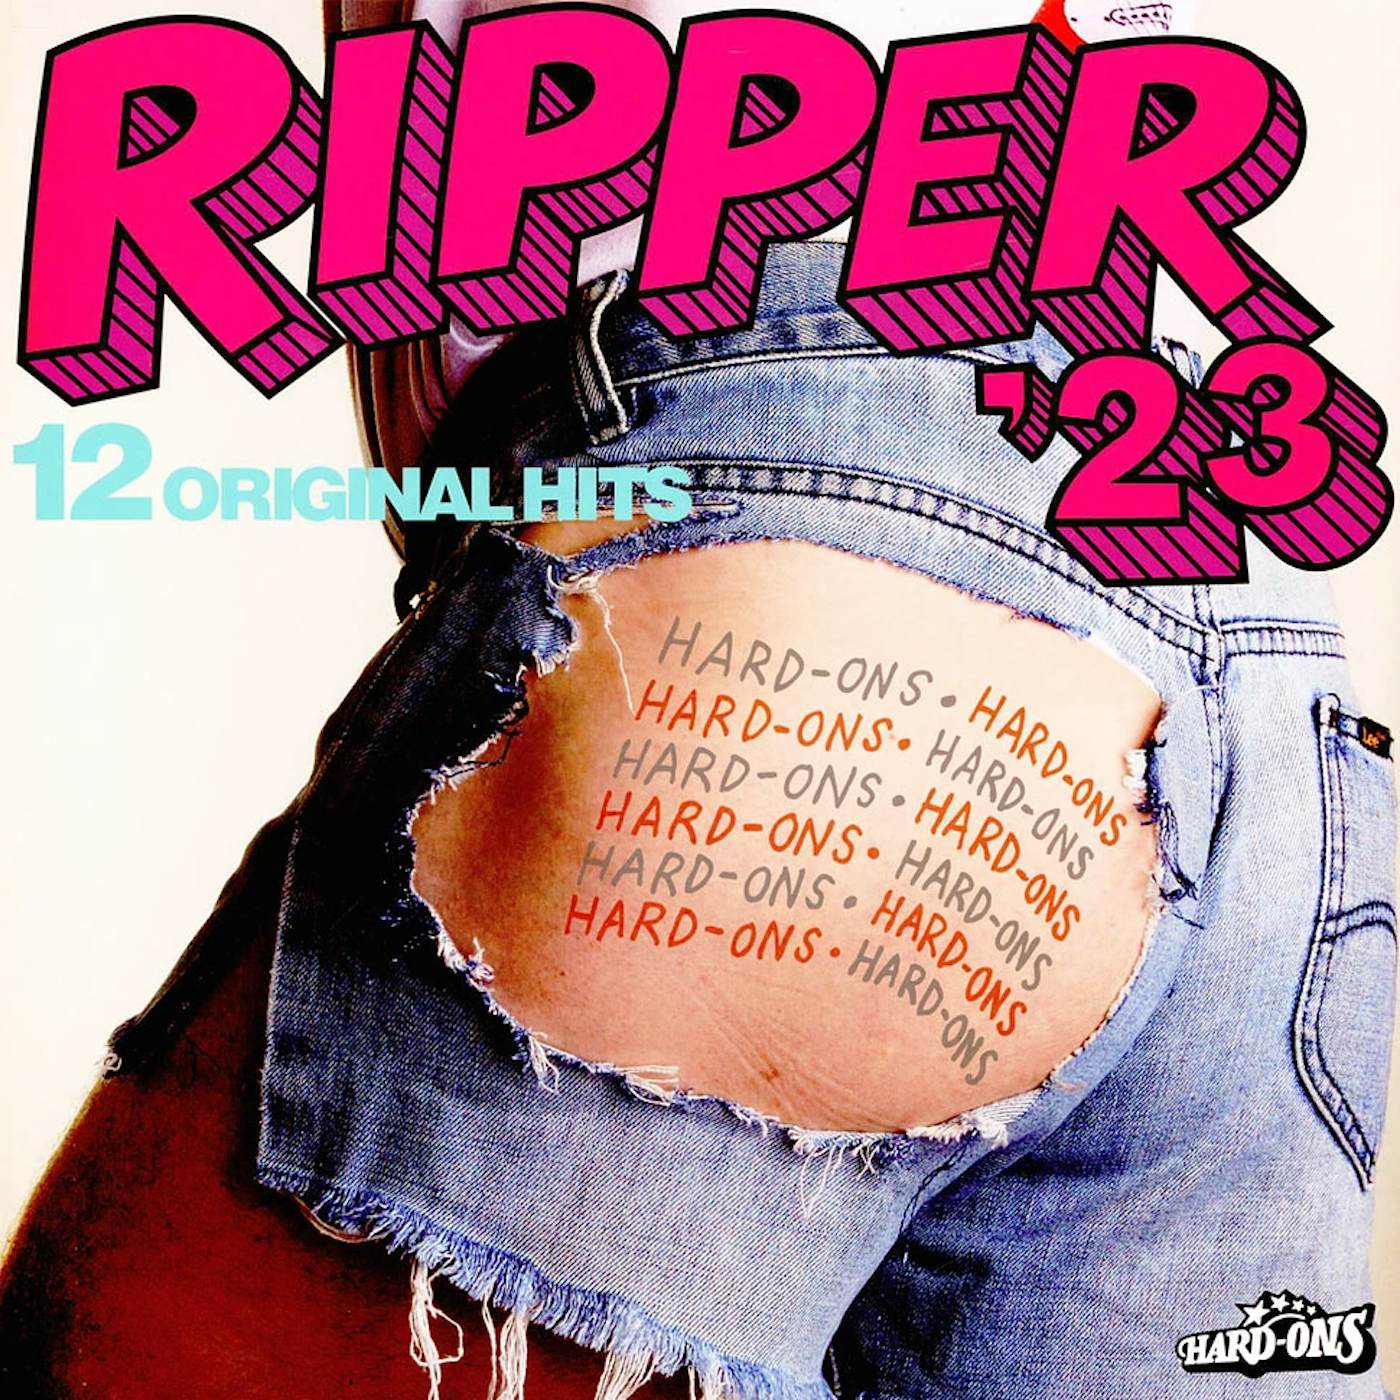 Hard-Ons RIPPER 23 Vinyl Record